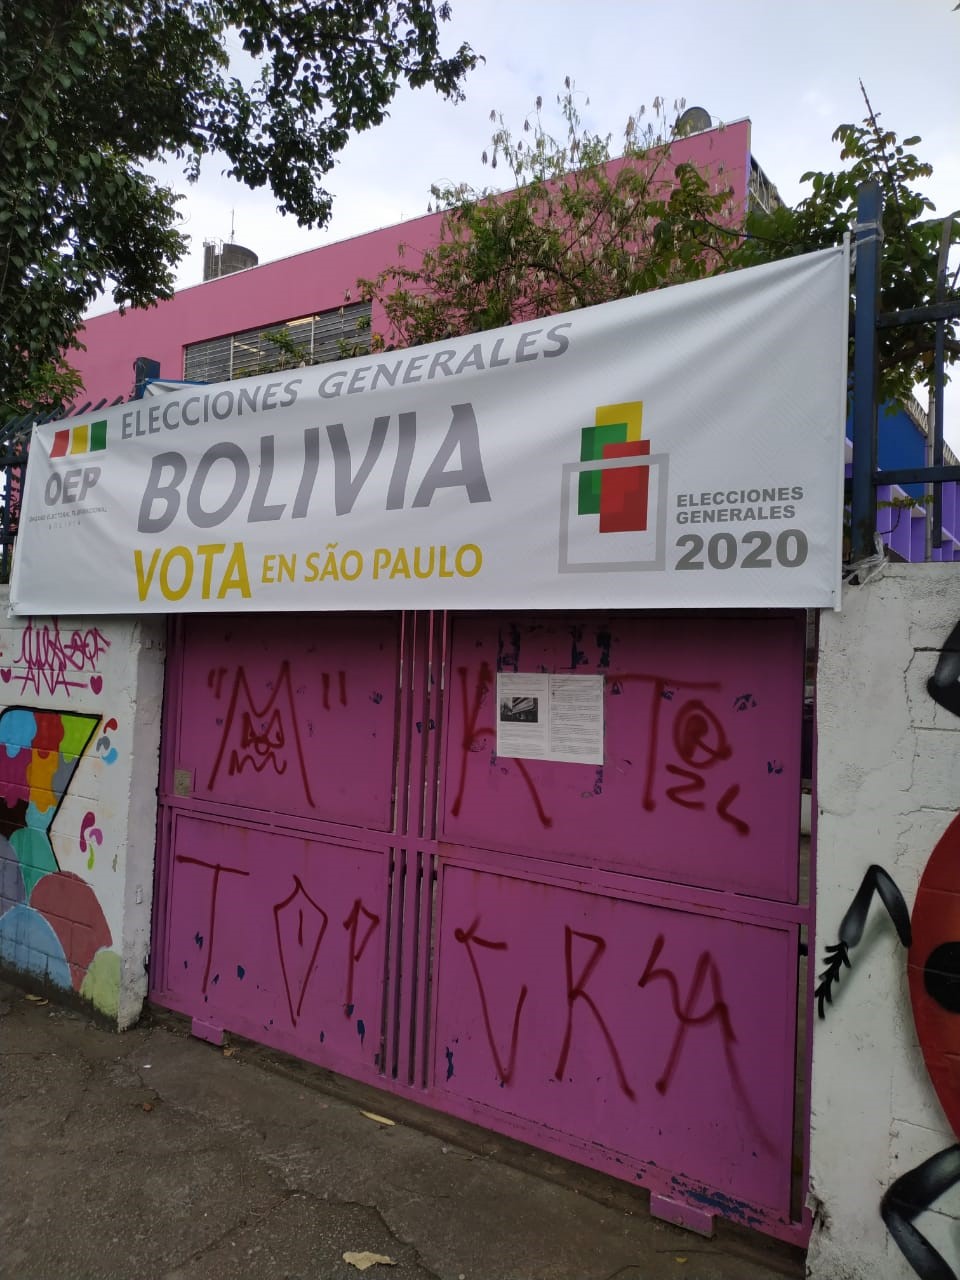  Fachada de uma escola municipal que recebeu as eleições da Bolívia